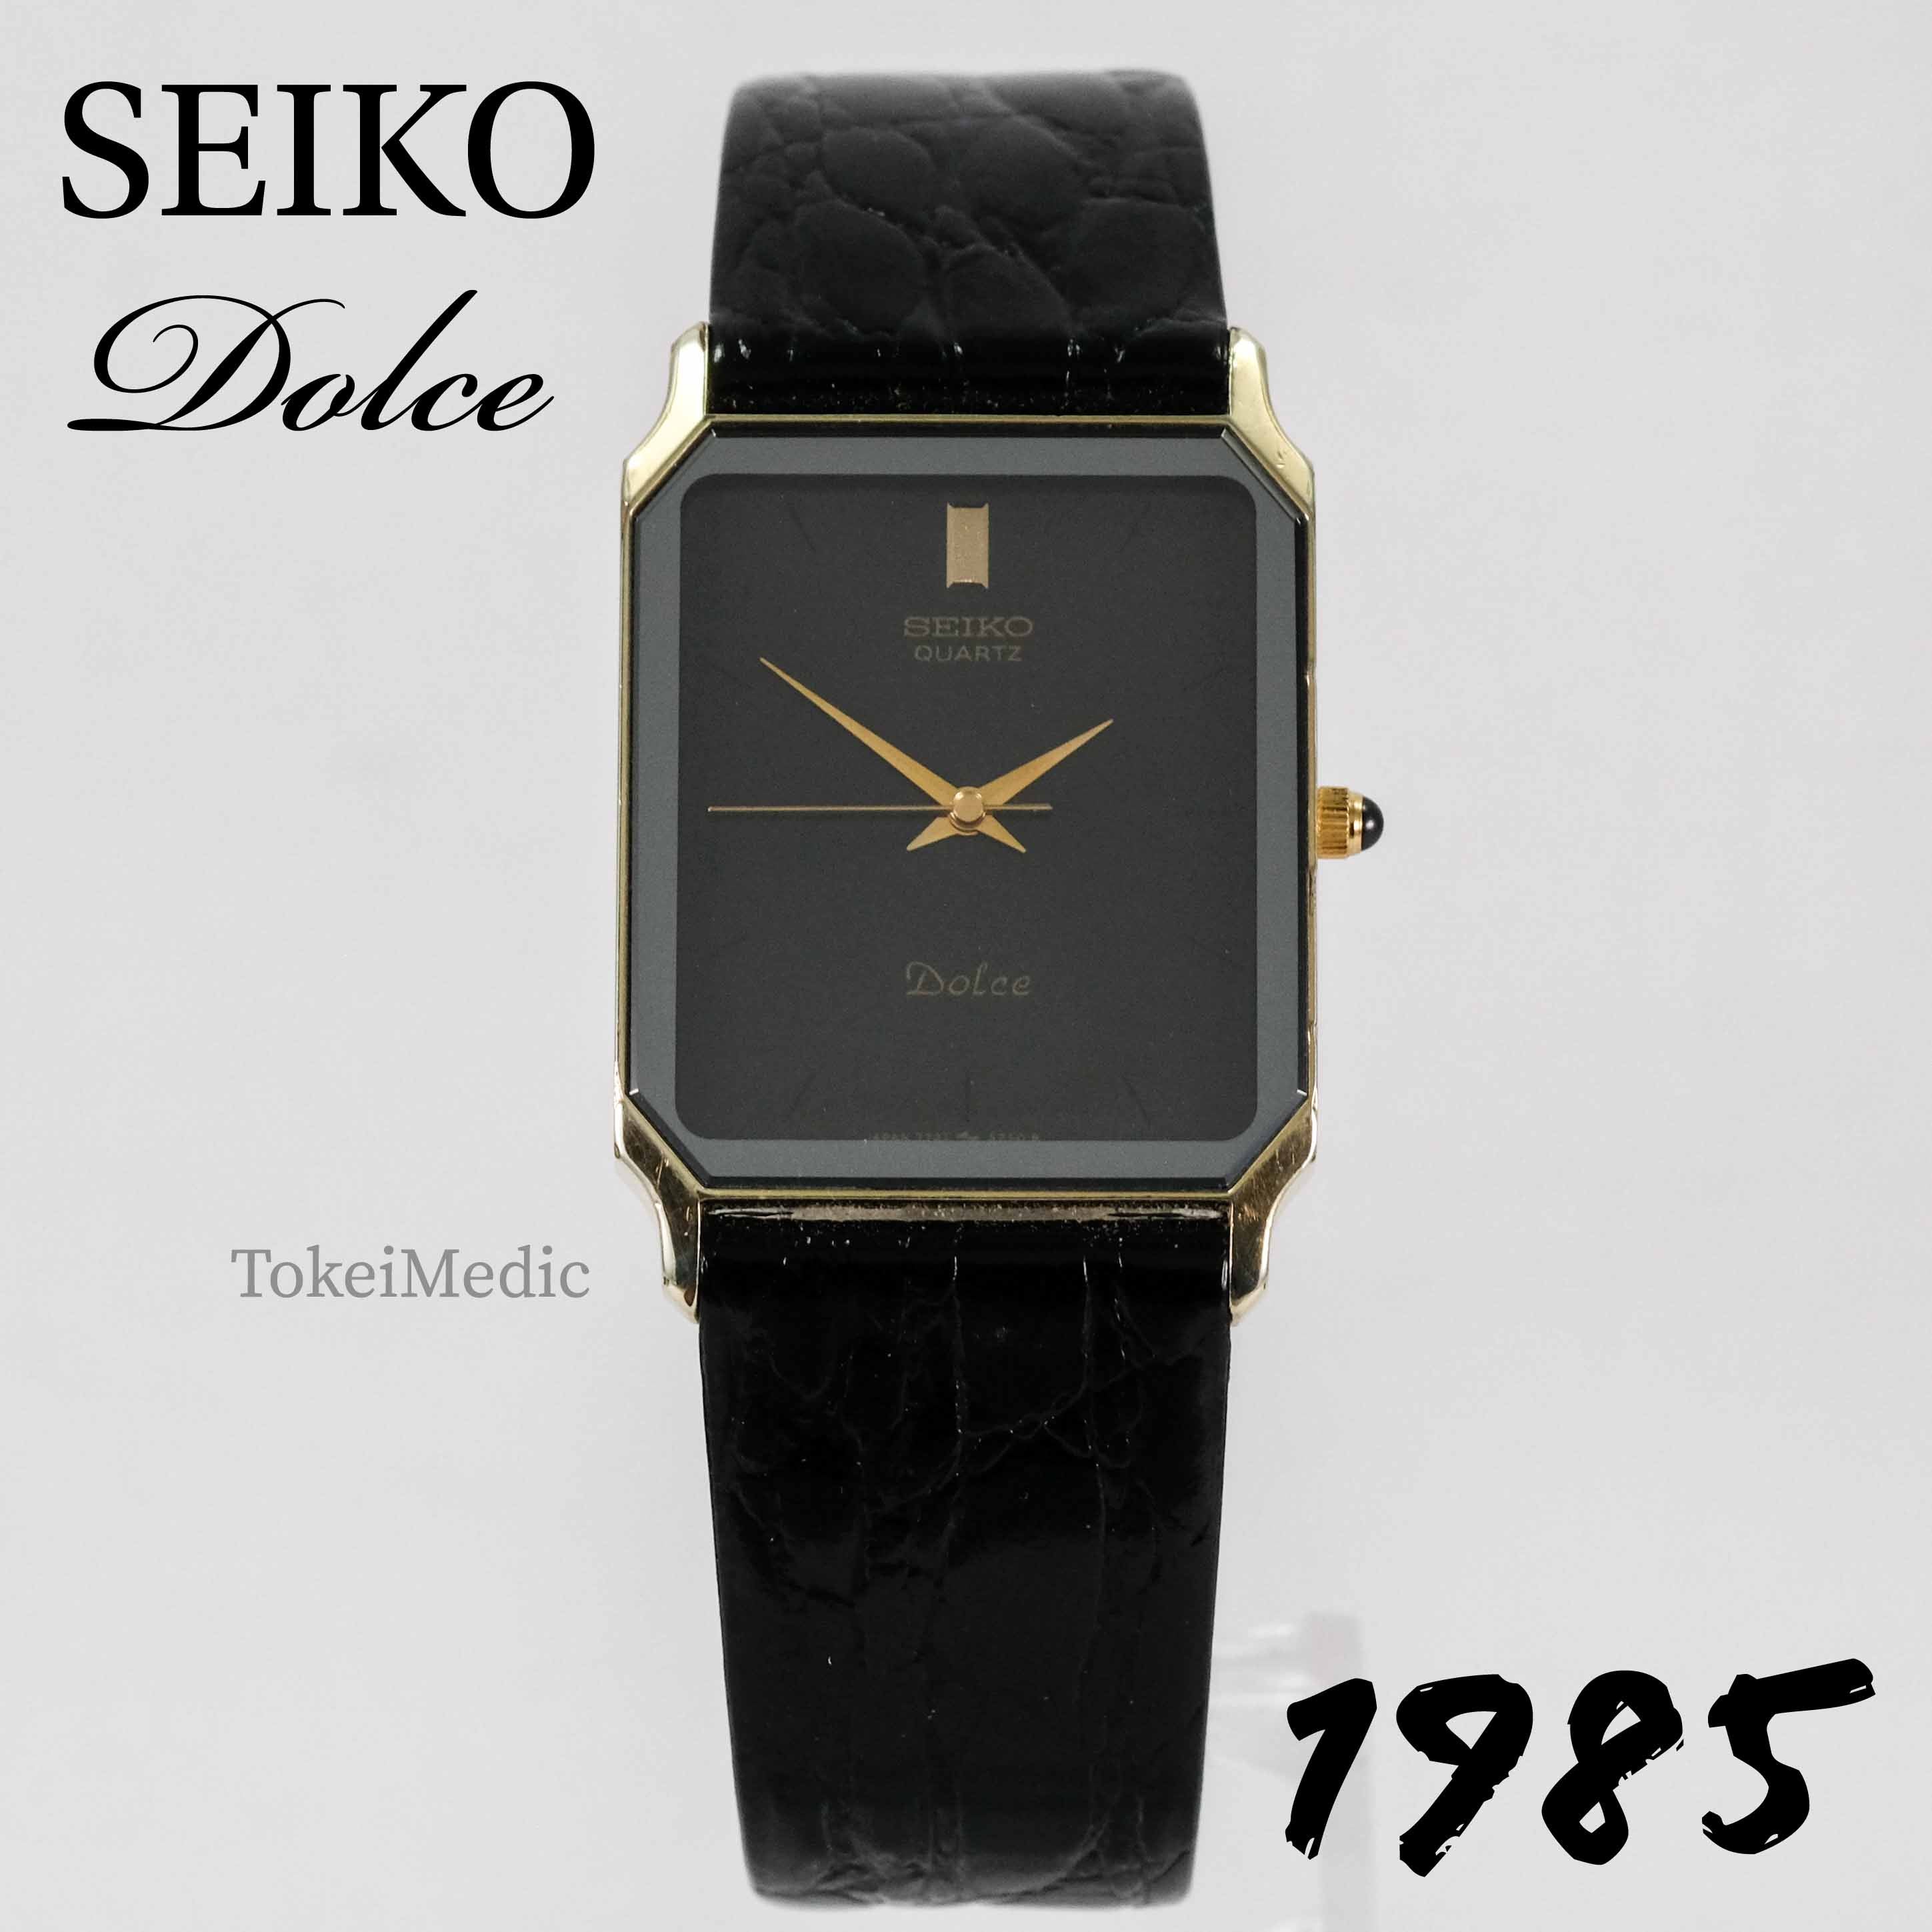 Vintage Seiko Dolce – Page 3 – TokeiMedic